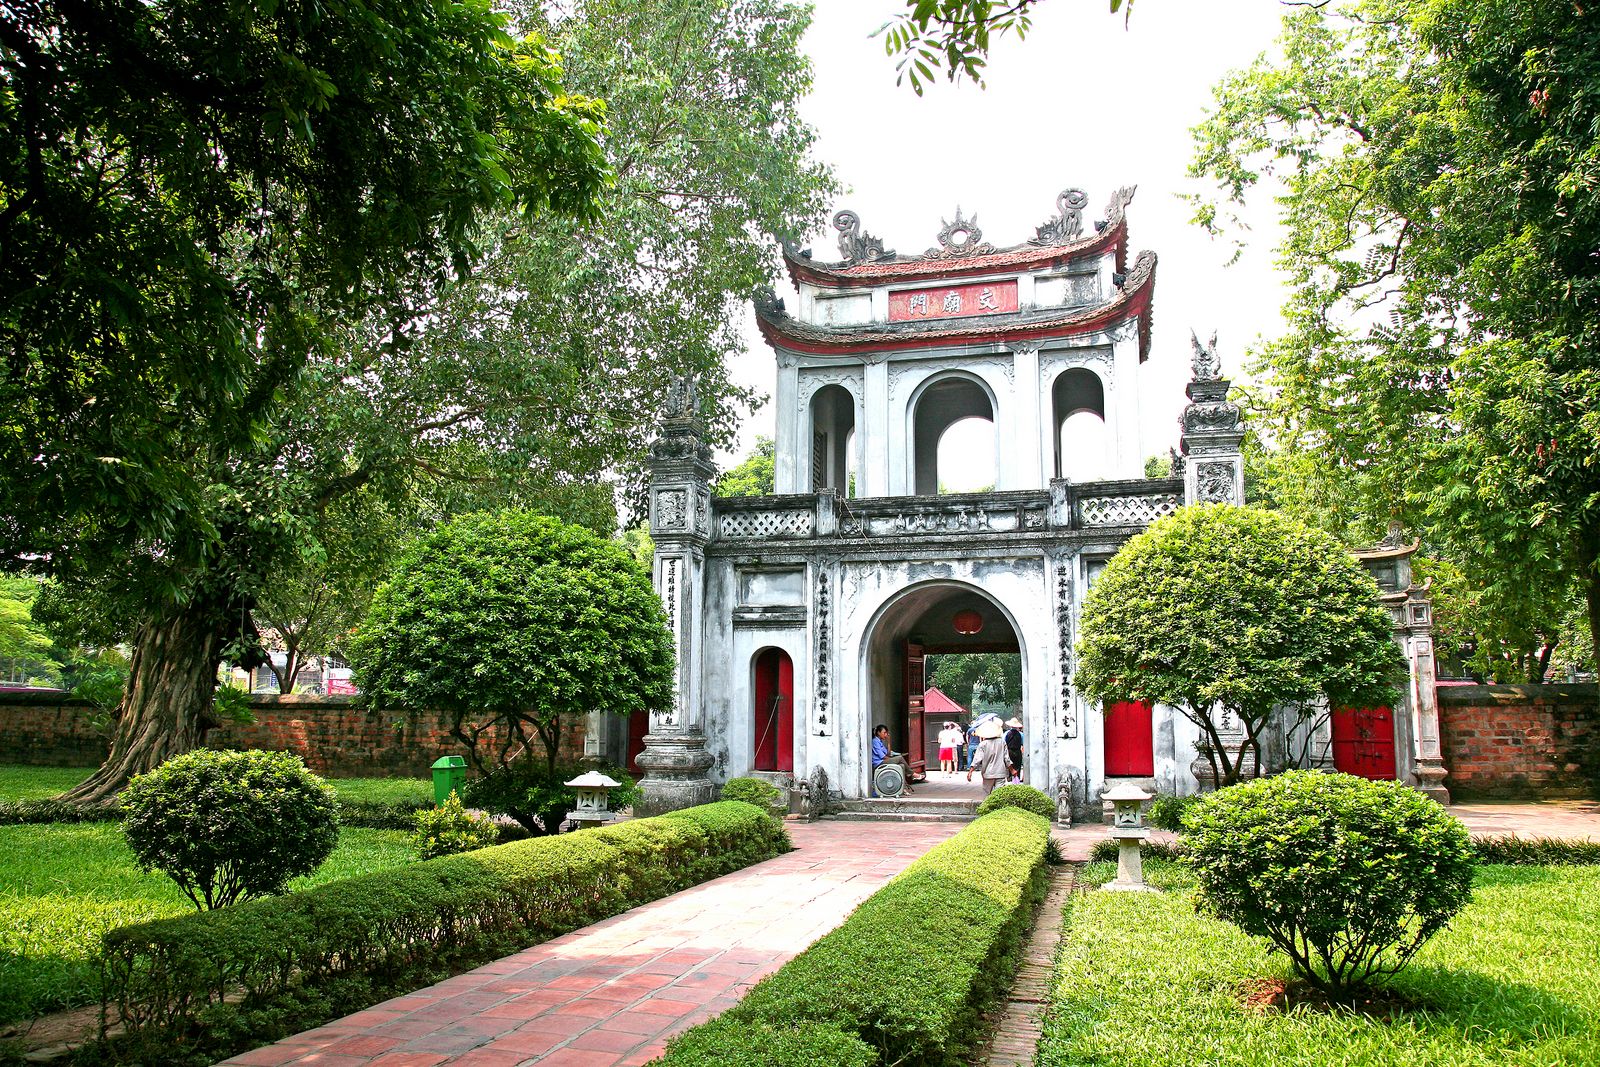 Hanoi City Tour full day trip